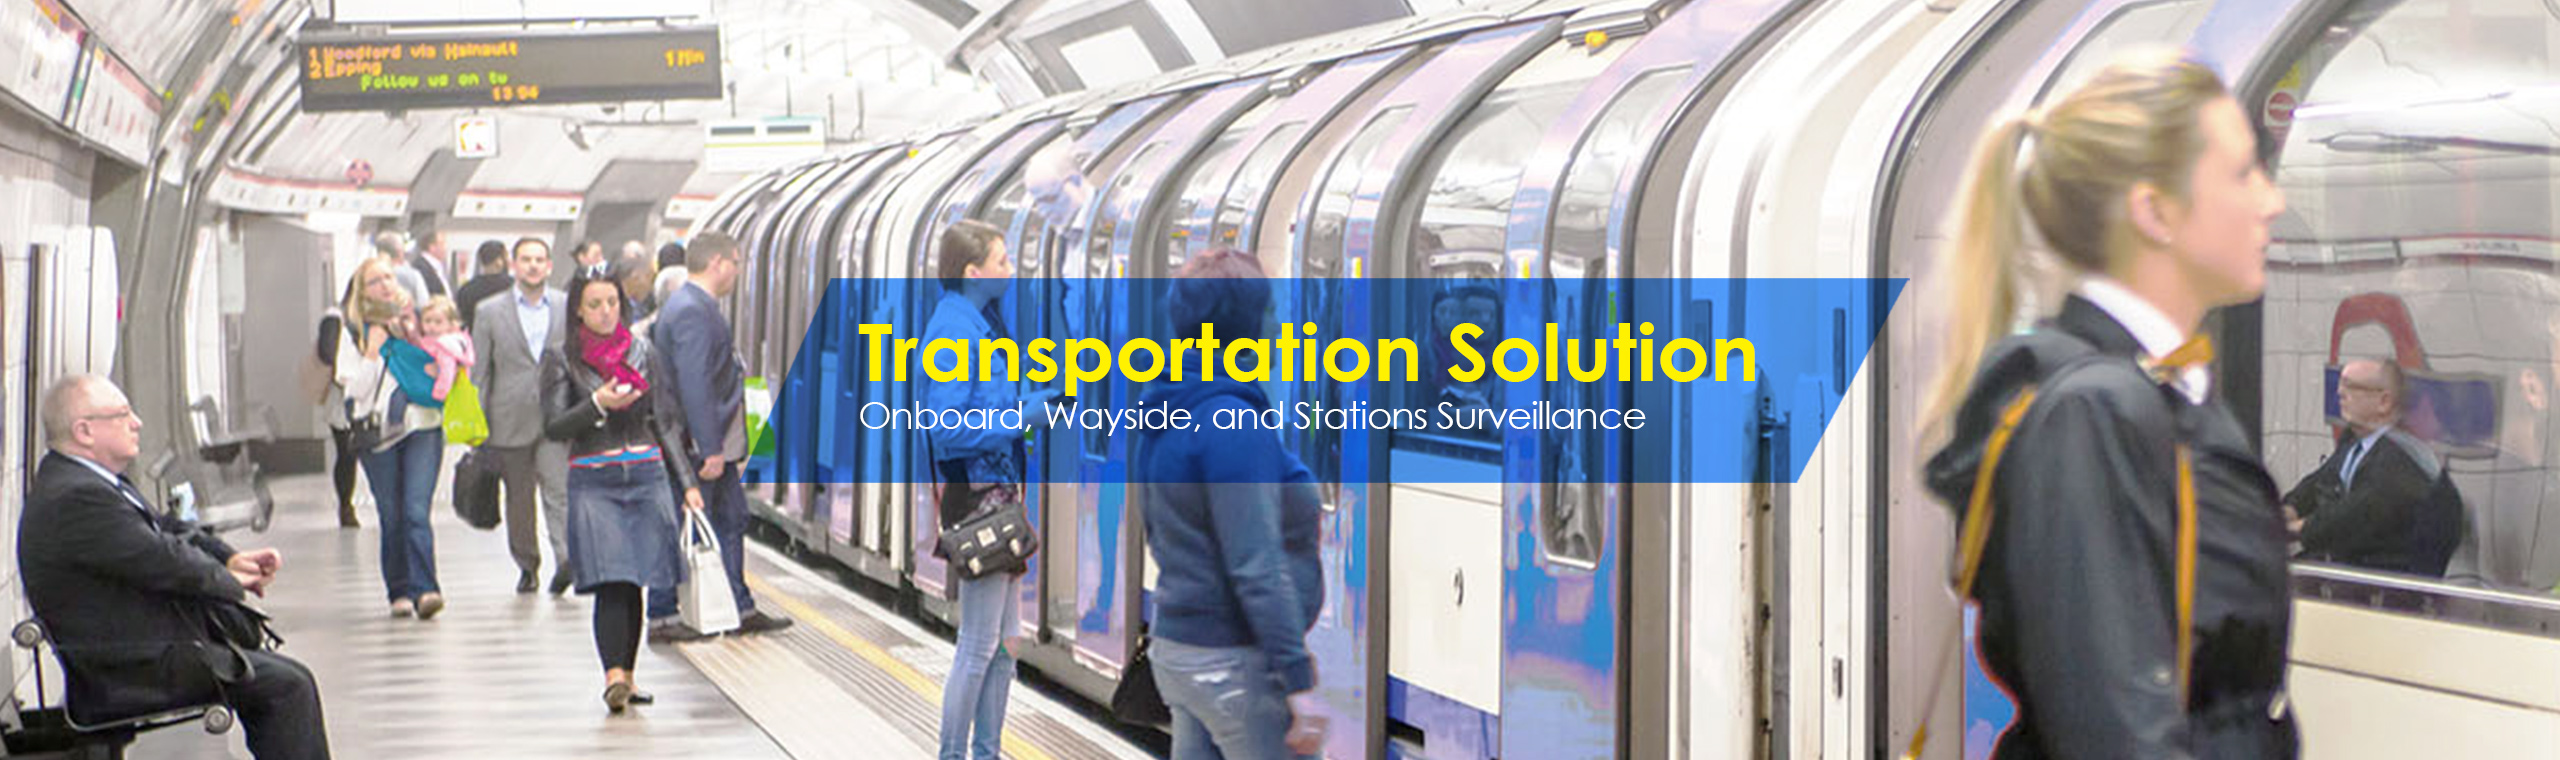 transportation-solution-banner.jpg